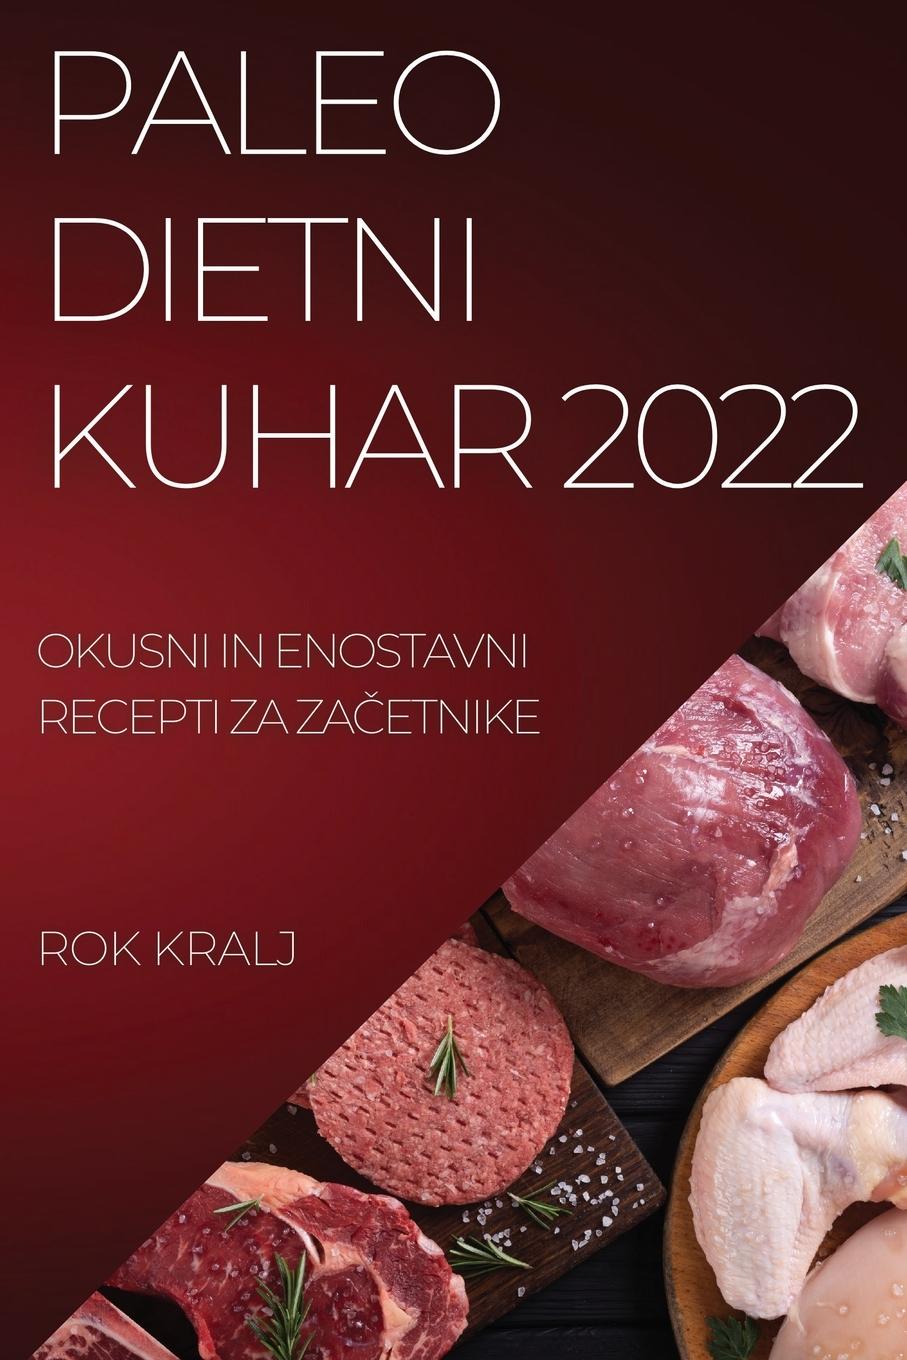 Book Paleo Dietni Kuhar 2022 